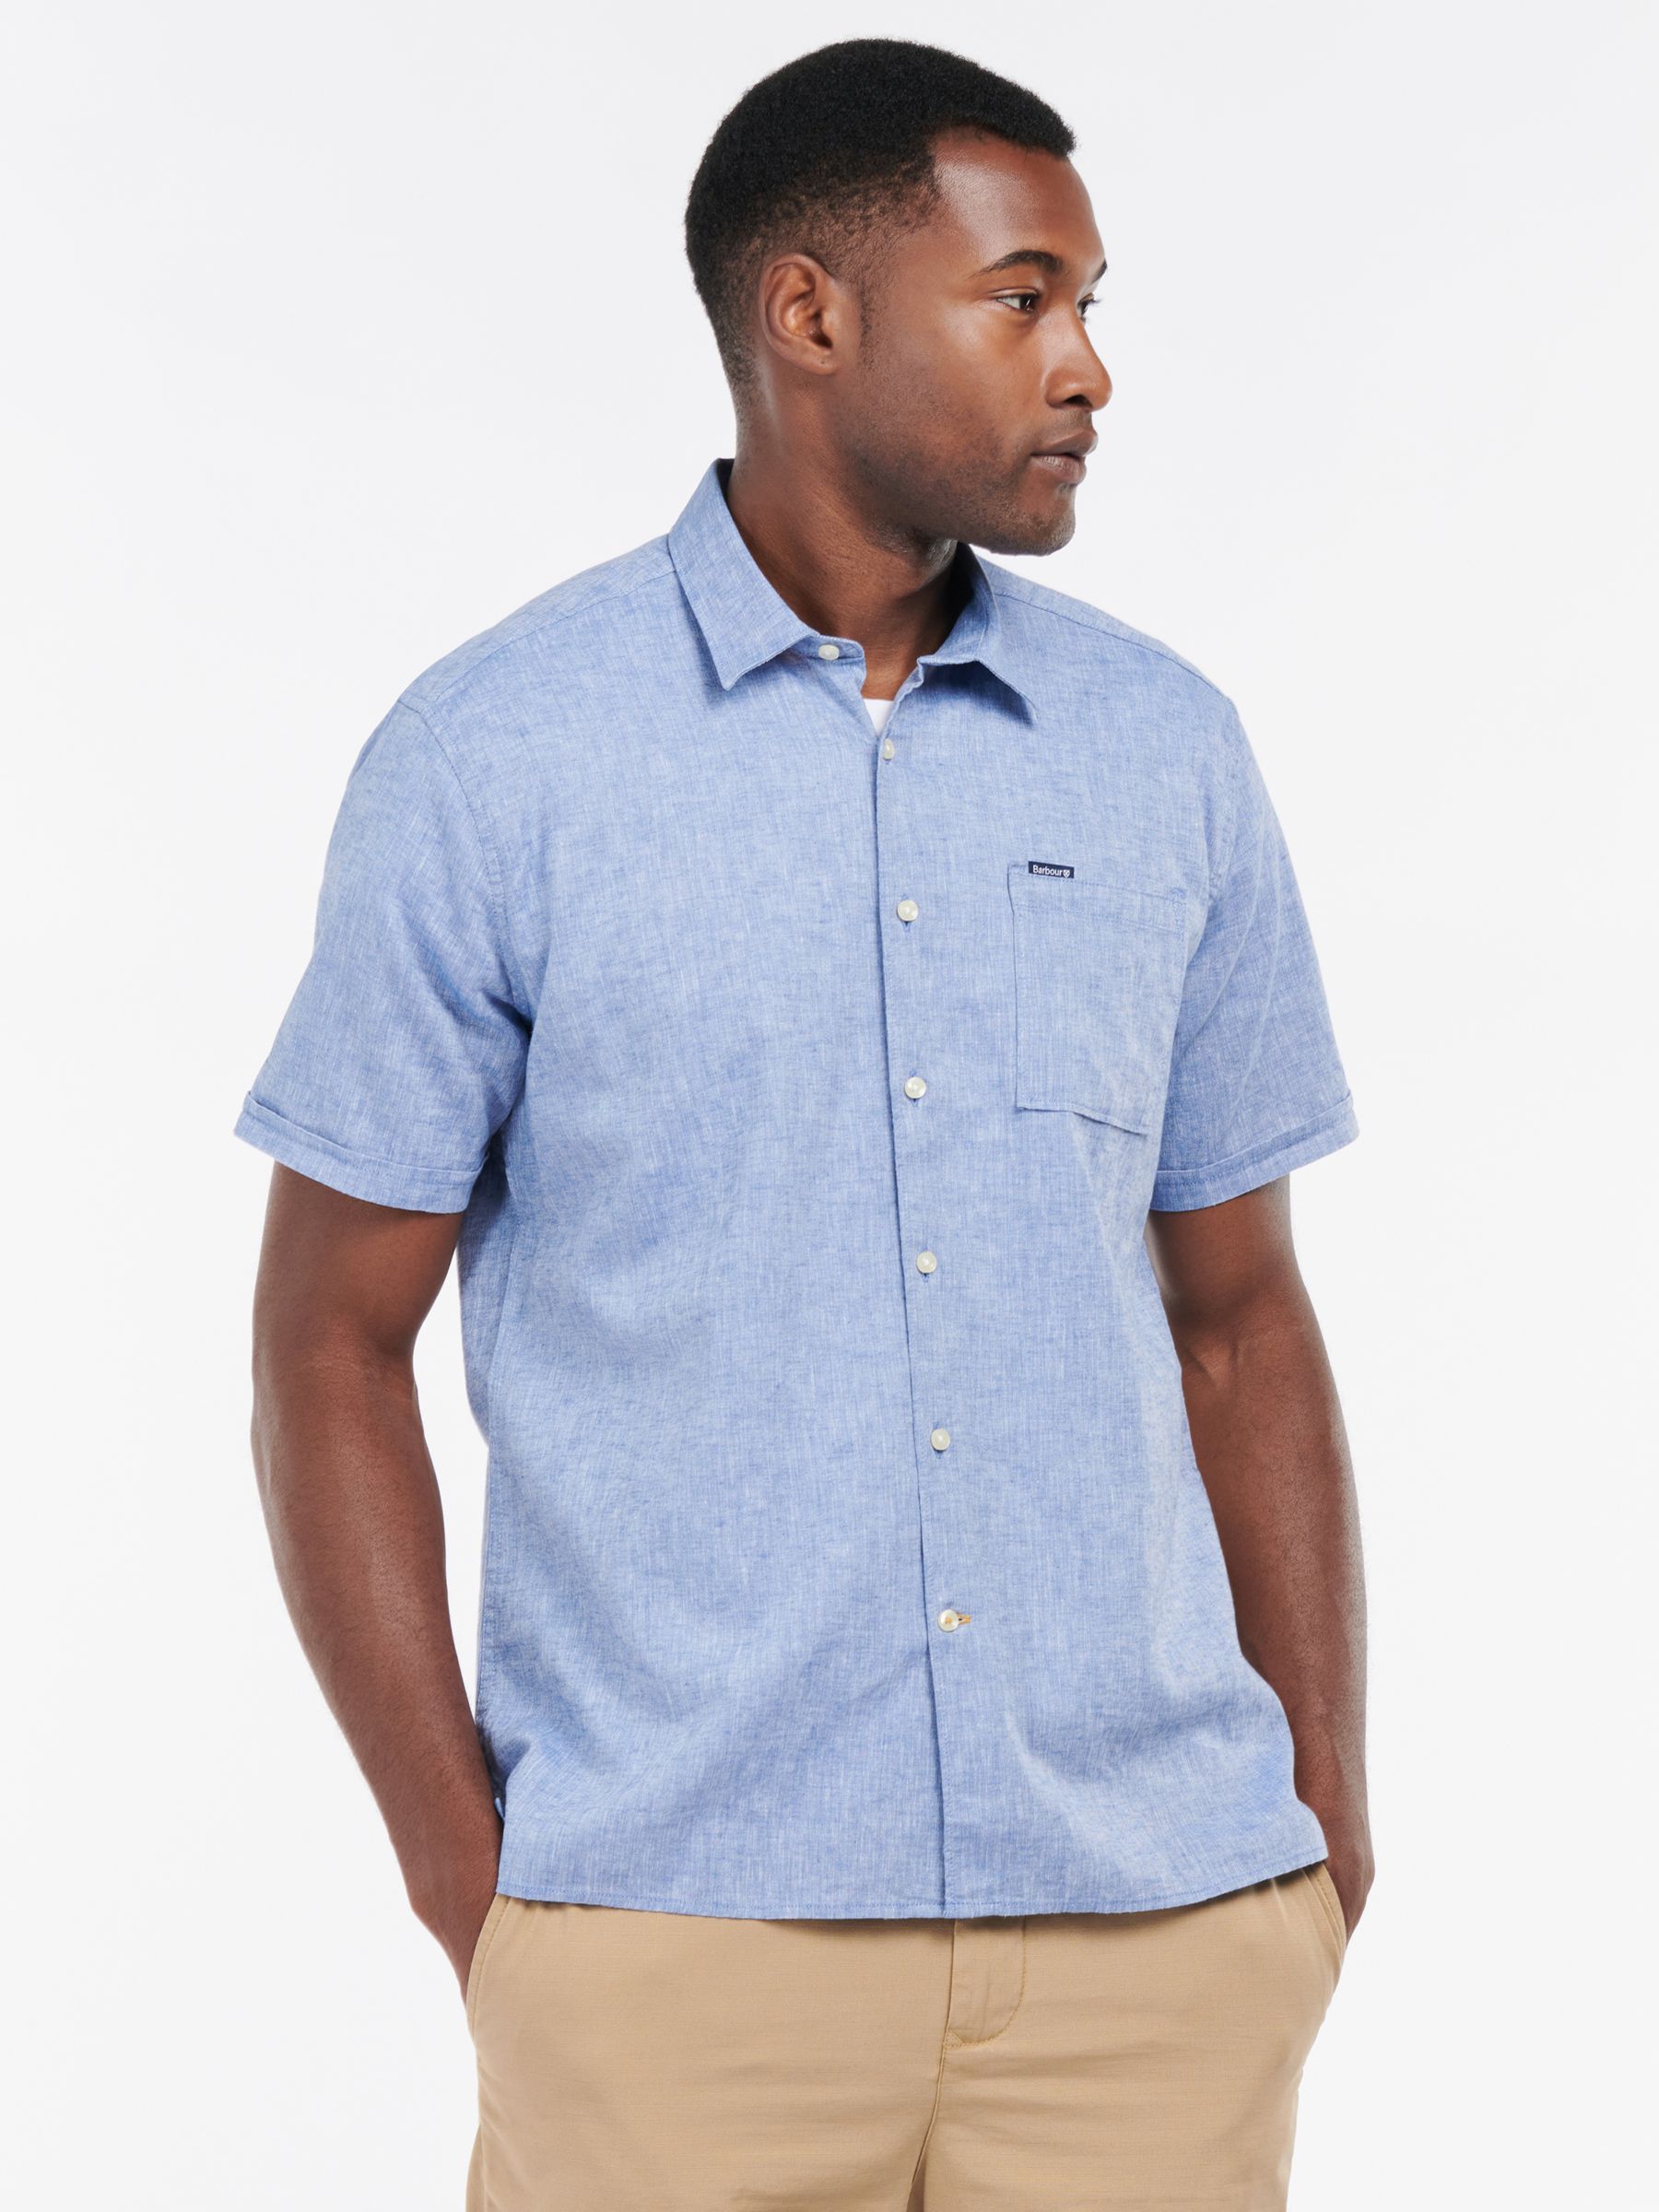 Barbour Nelson Linen Blend Short Sleeve Shirt, Blue, S